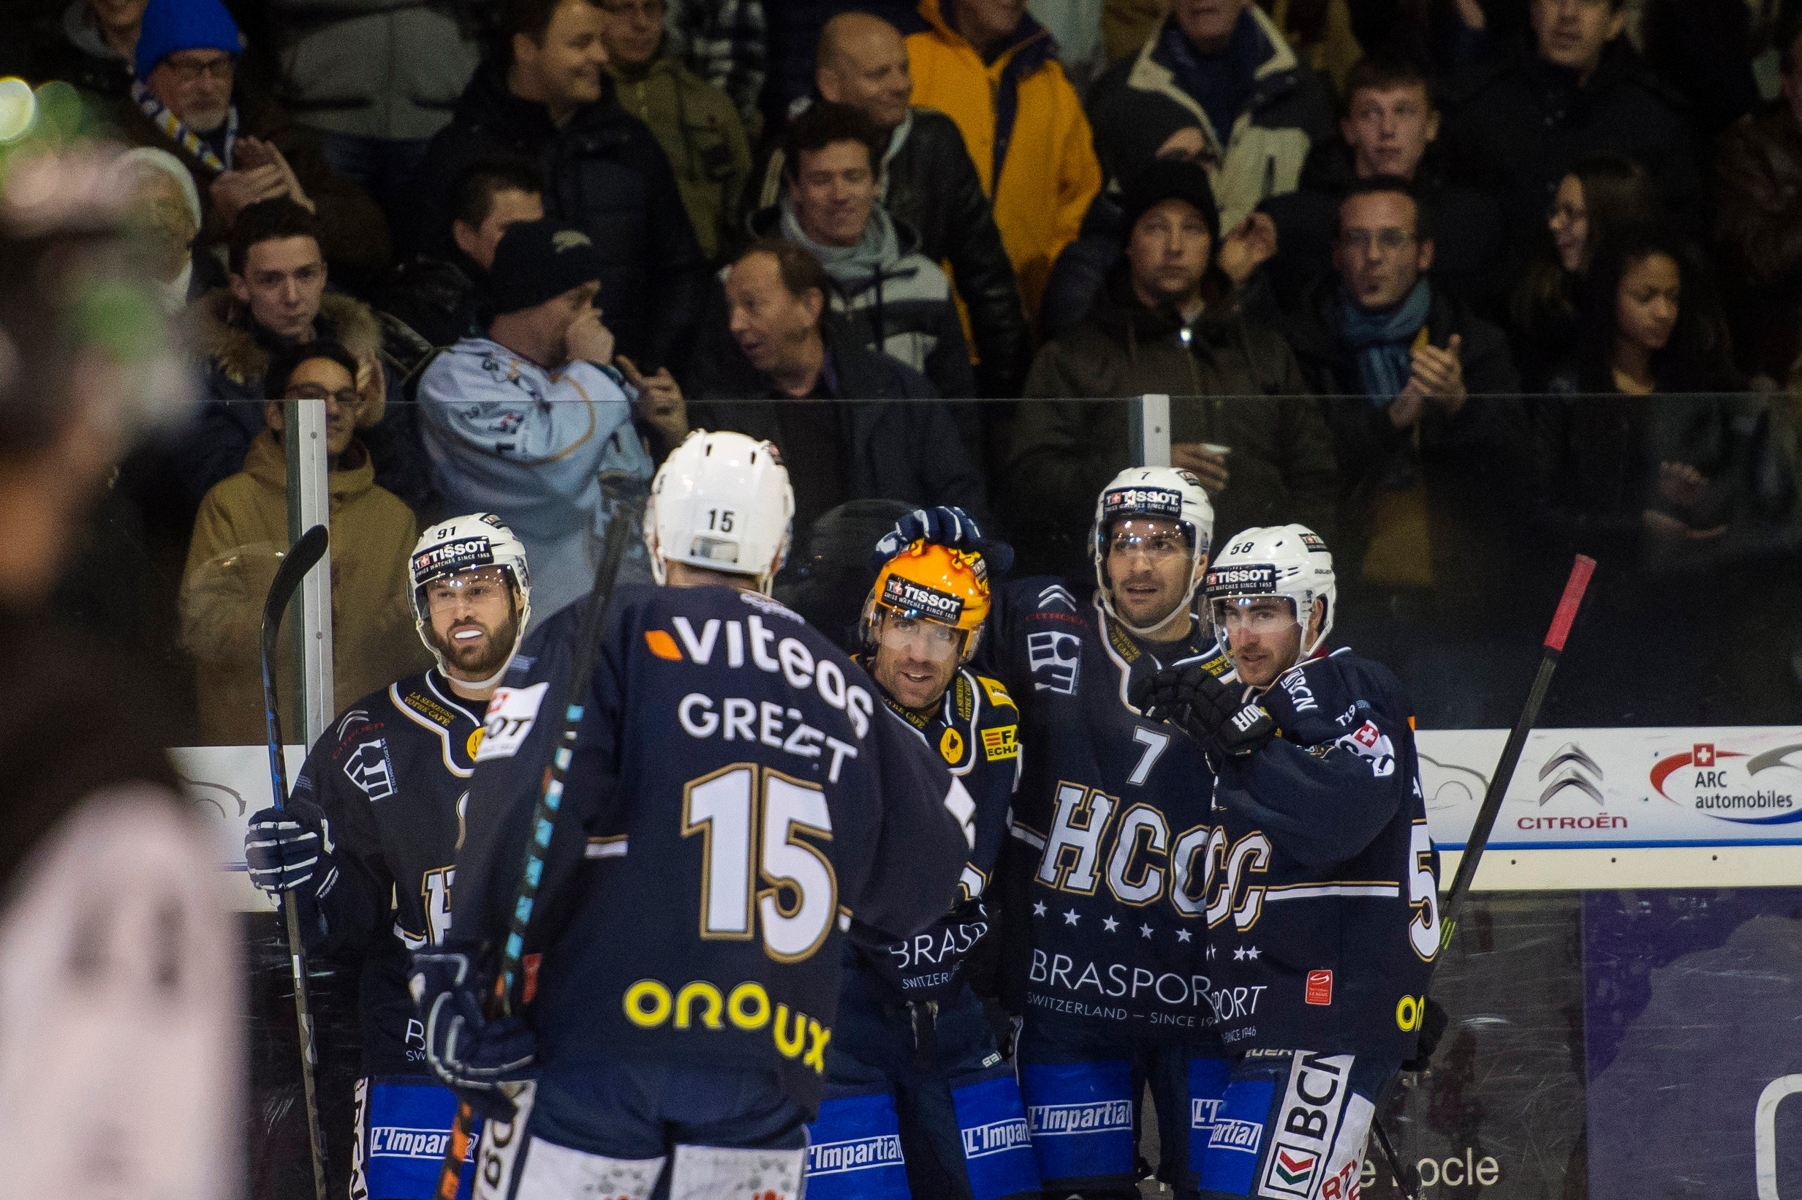 hockey HCC - Viege

Joie HCC



La Chaux-de-Fonds, 01 12 2015

Photo : © David Marchon